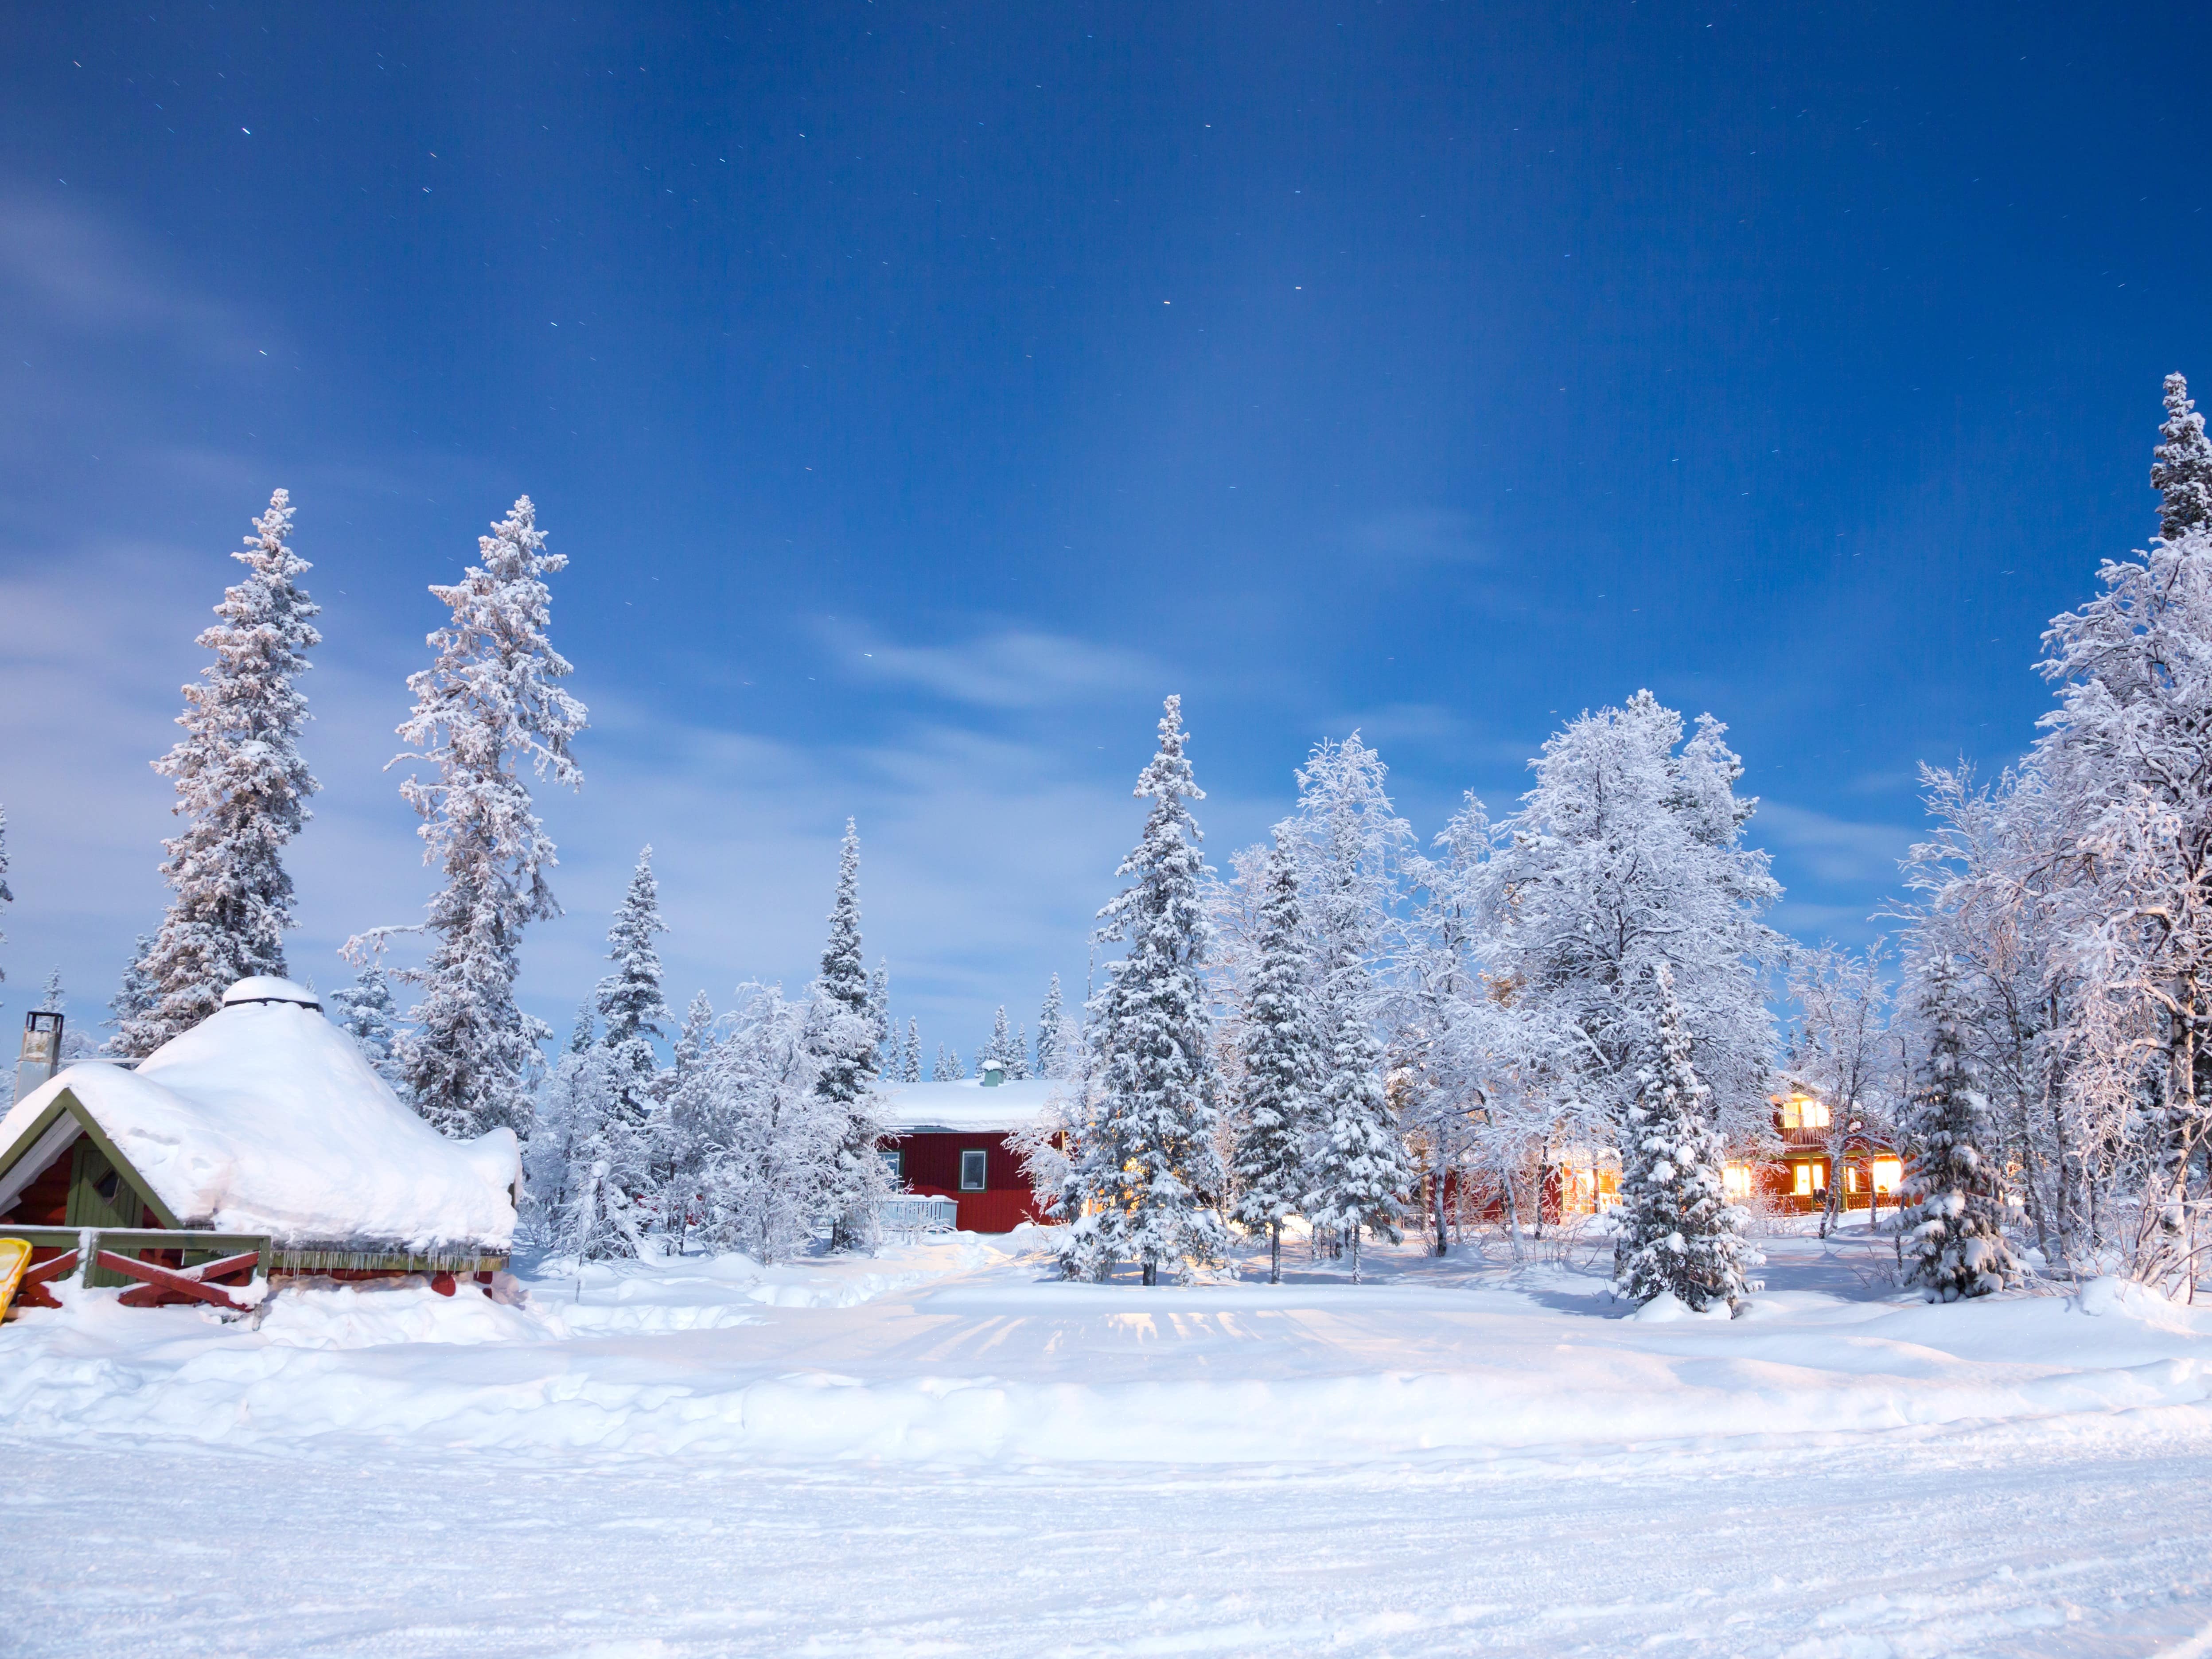 Legg ferien til en hytte i Telemark i år